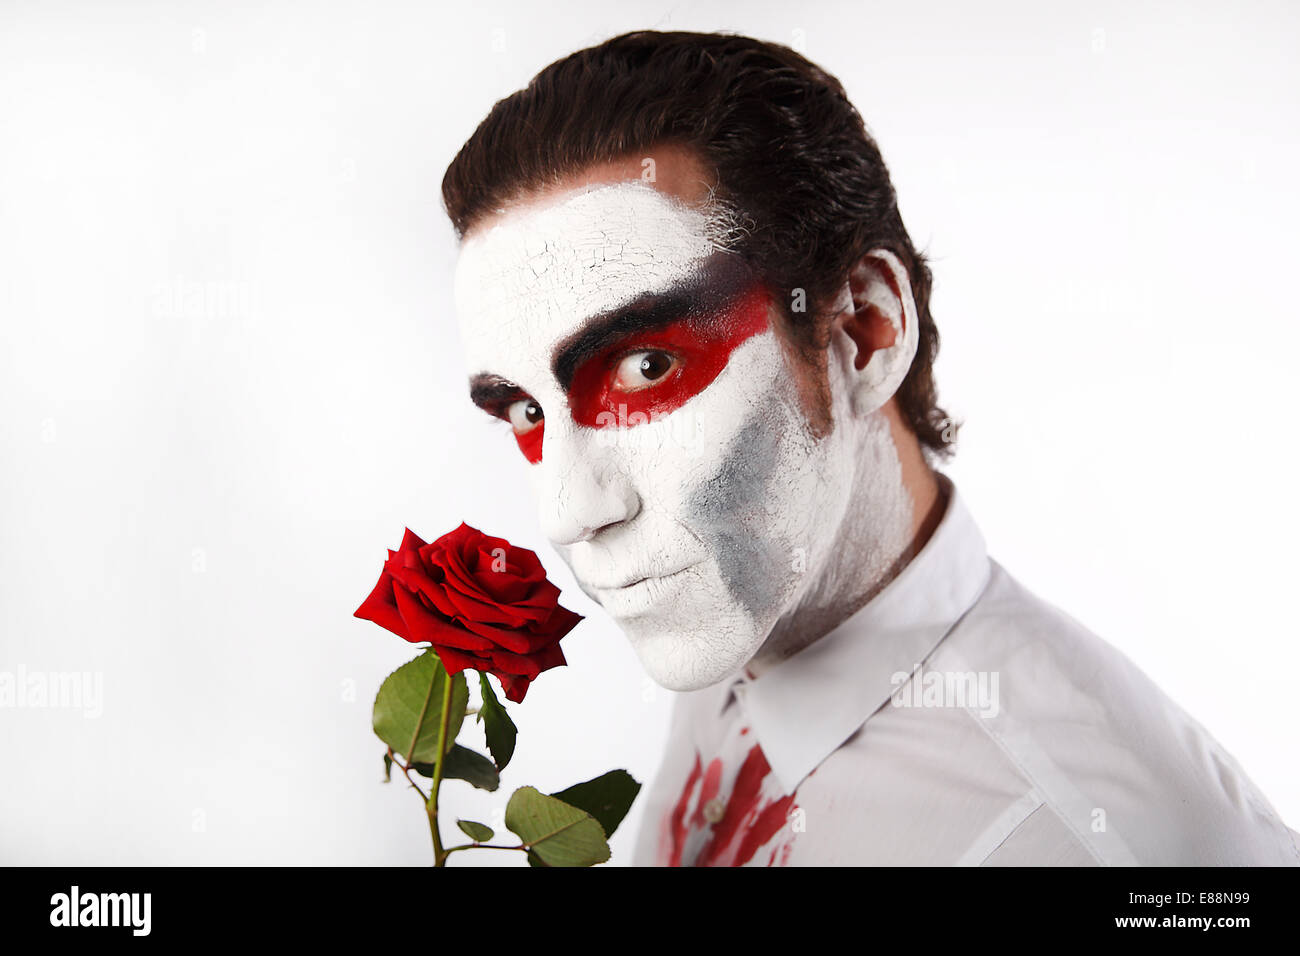 Mann mit weißen Mascara und blutigen Shirt hält rote Rose vor einem weißen Hintergrund Stockfoto